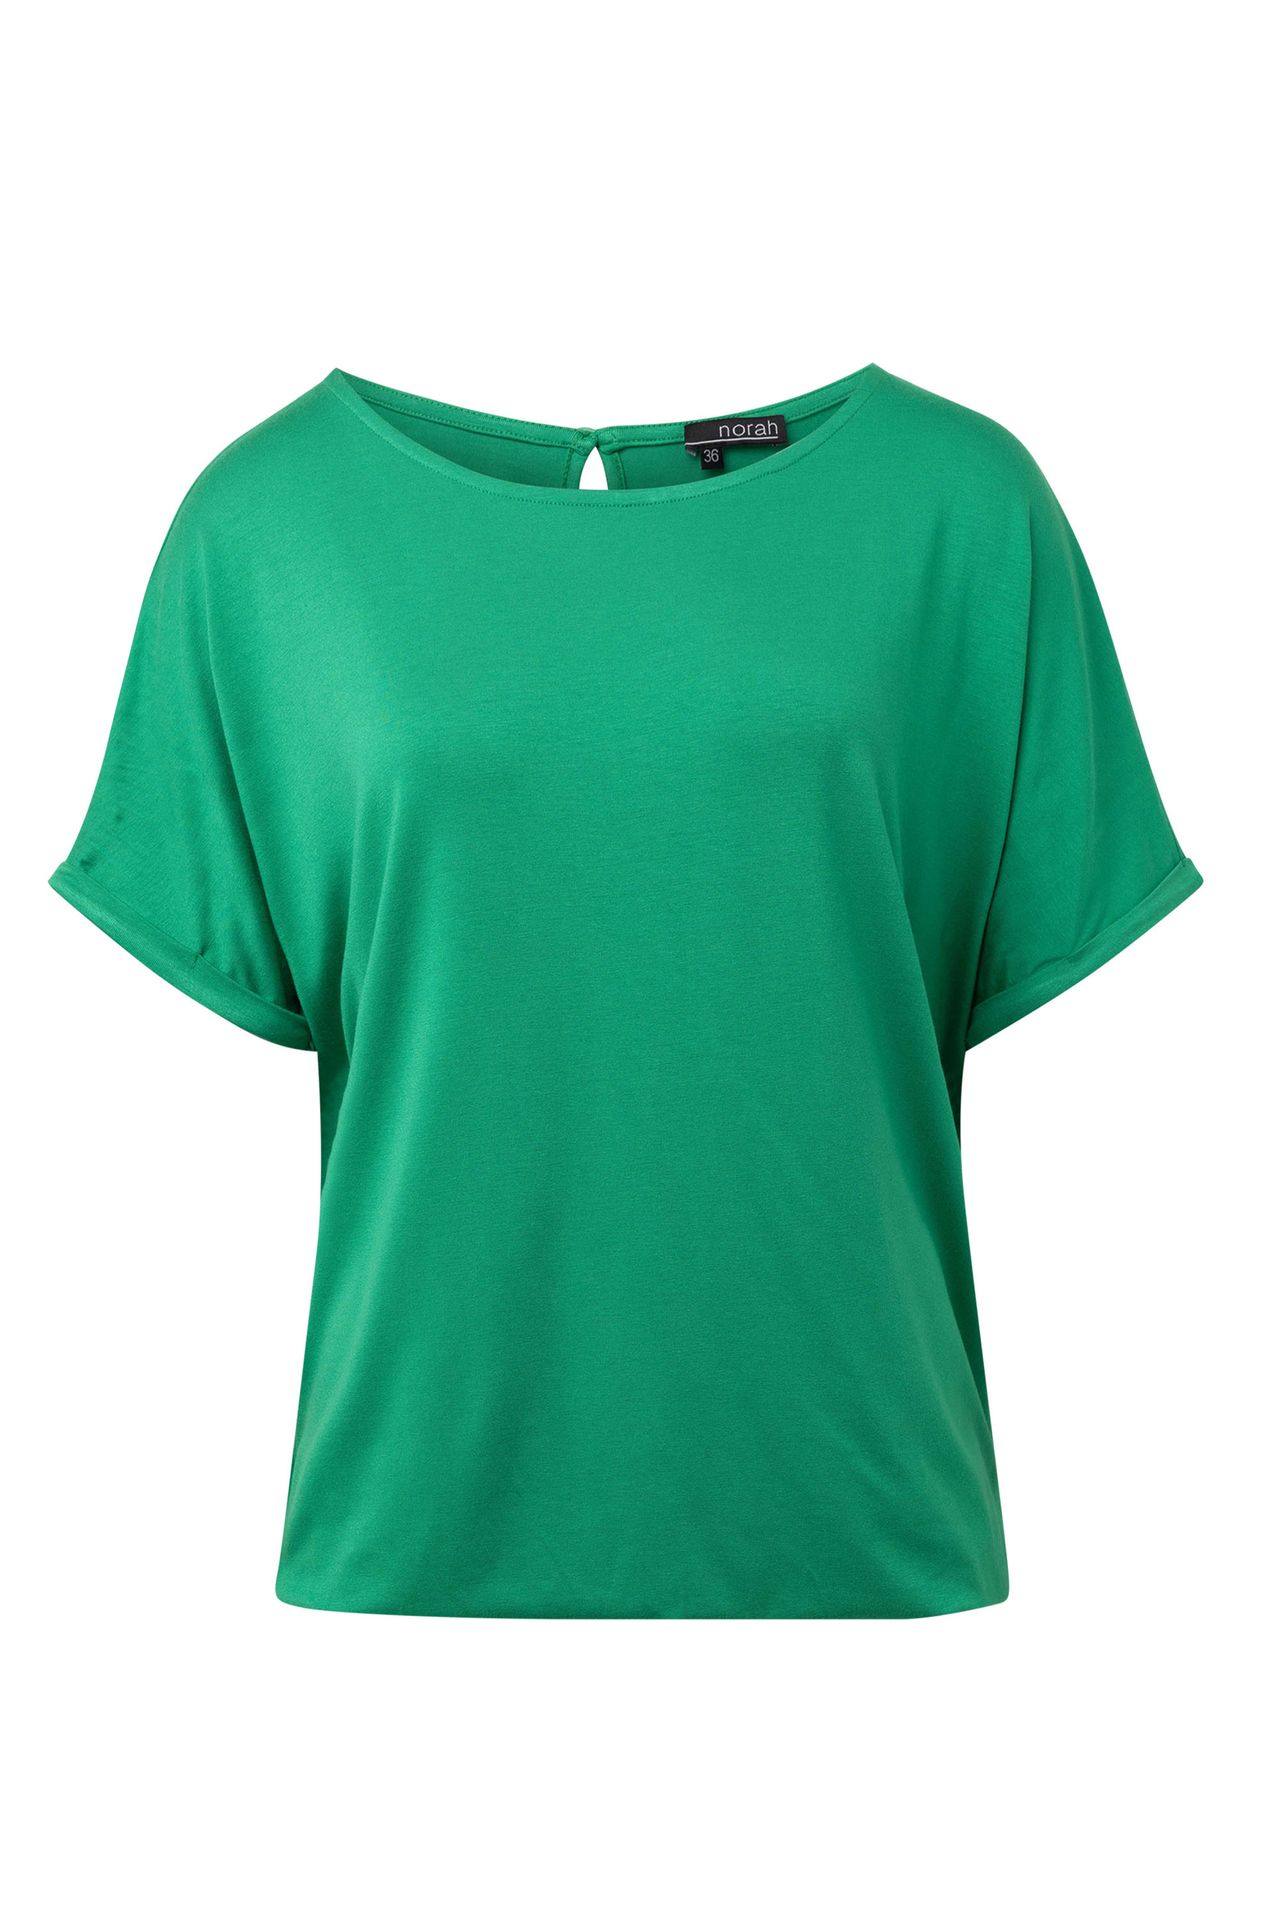 Norah Shirt groen apple green 215230-505